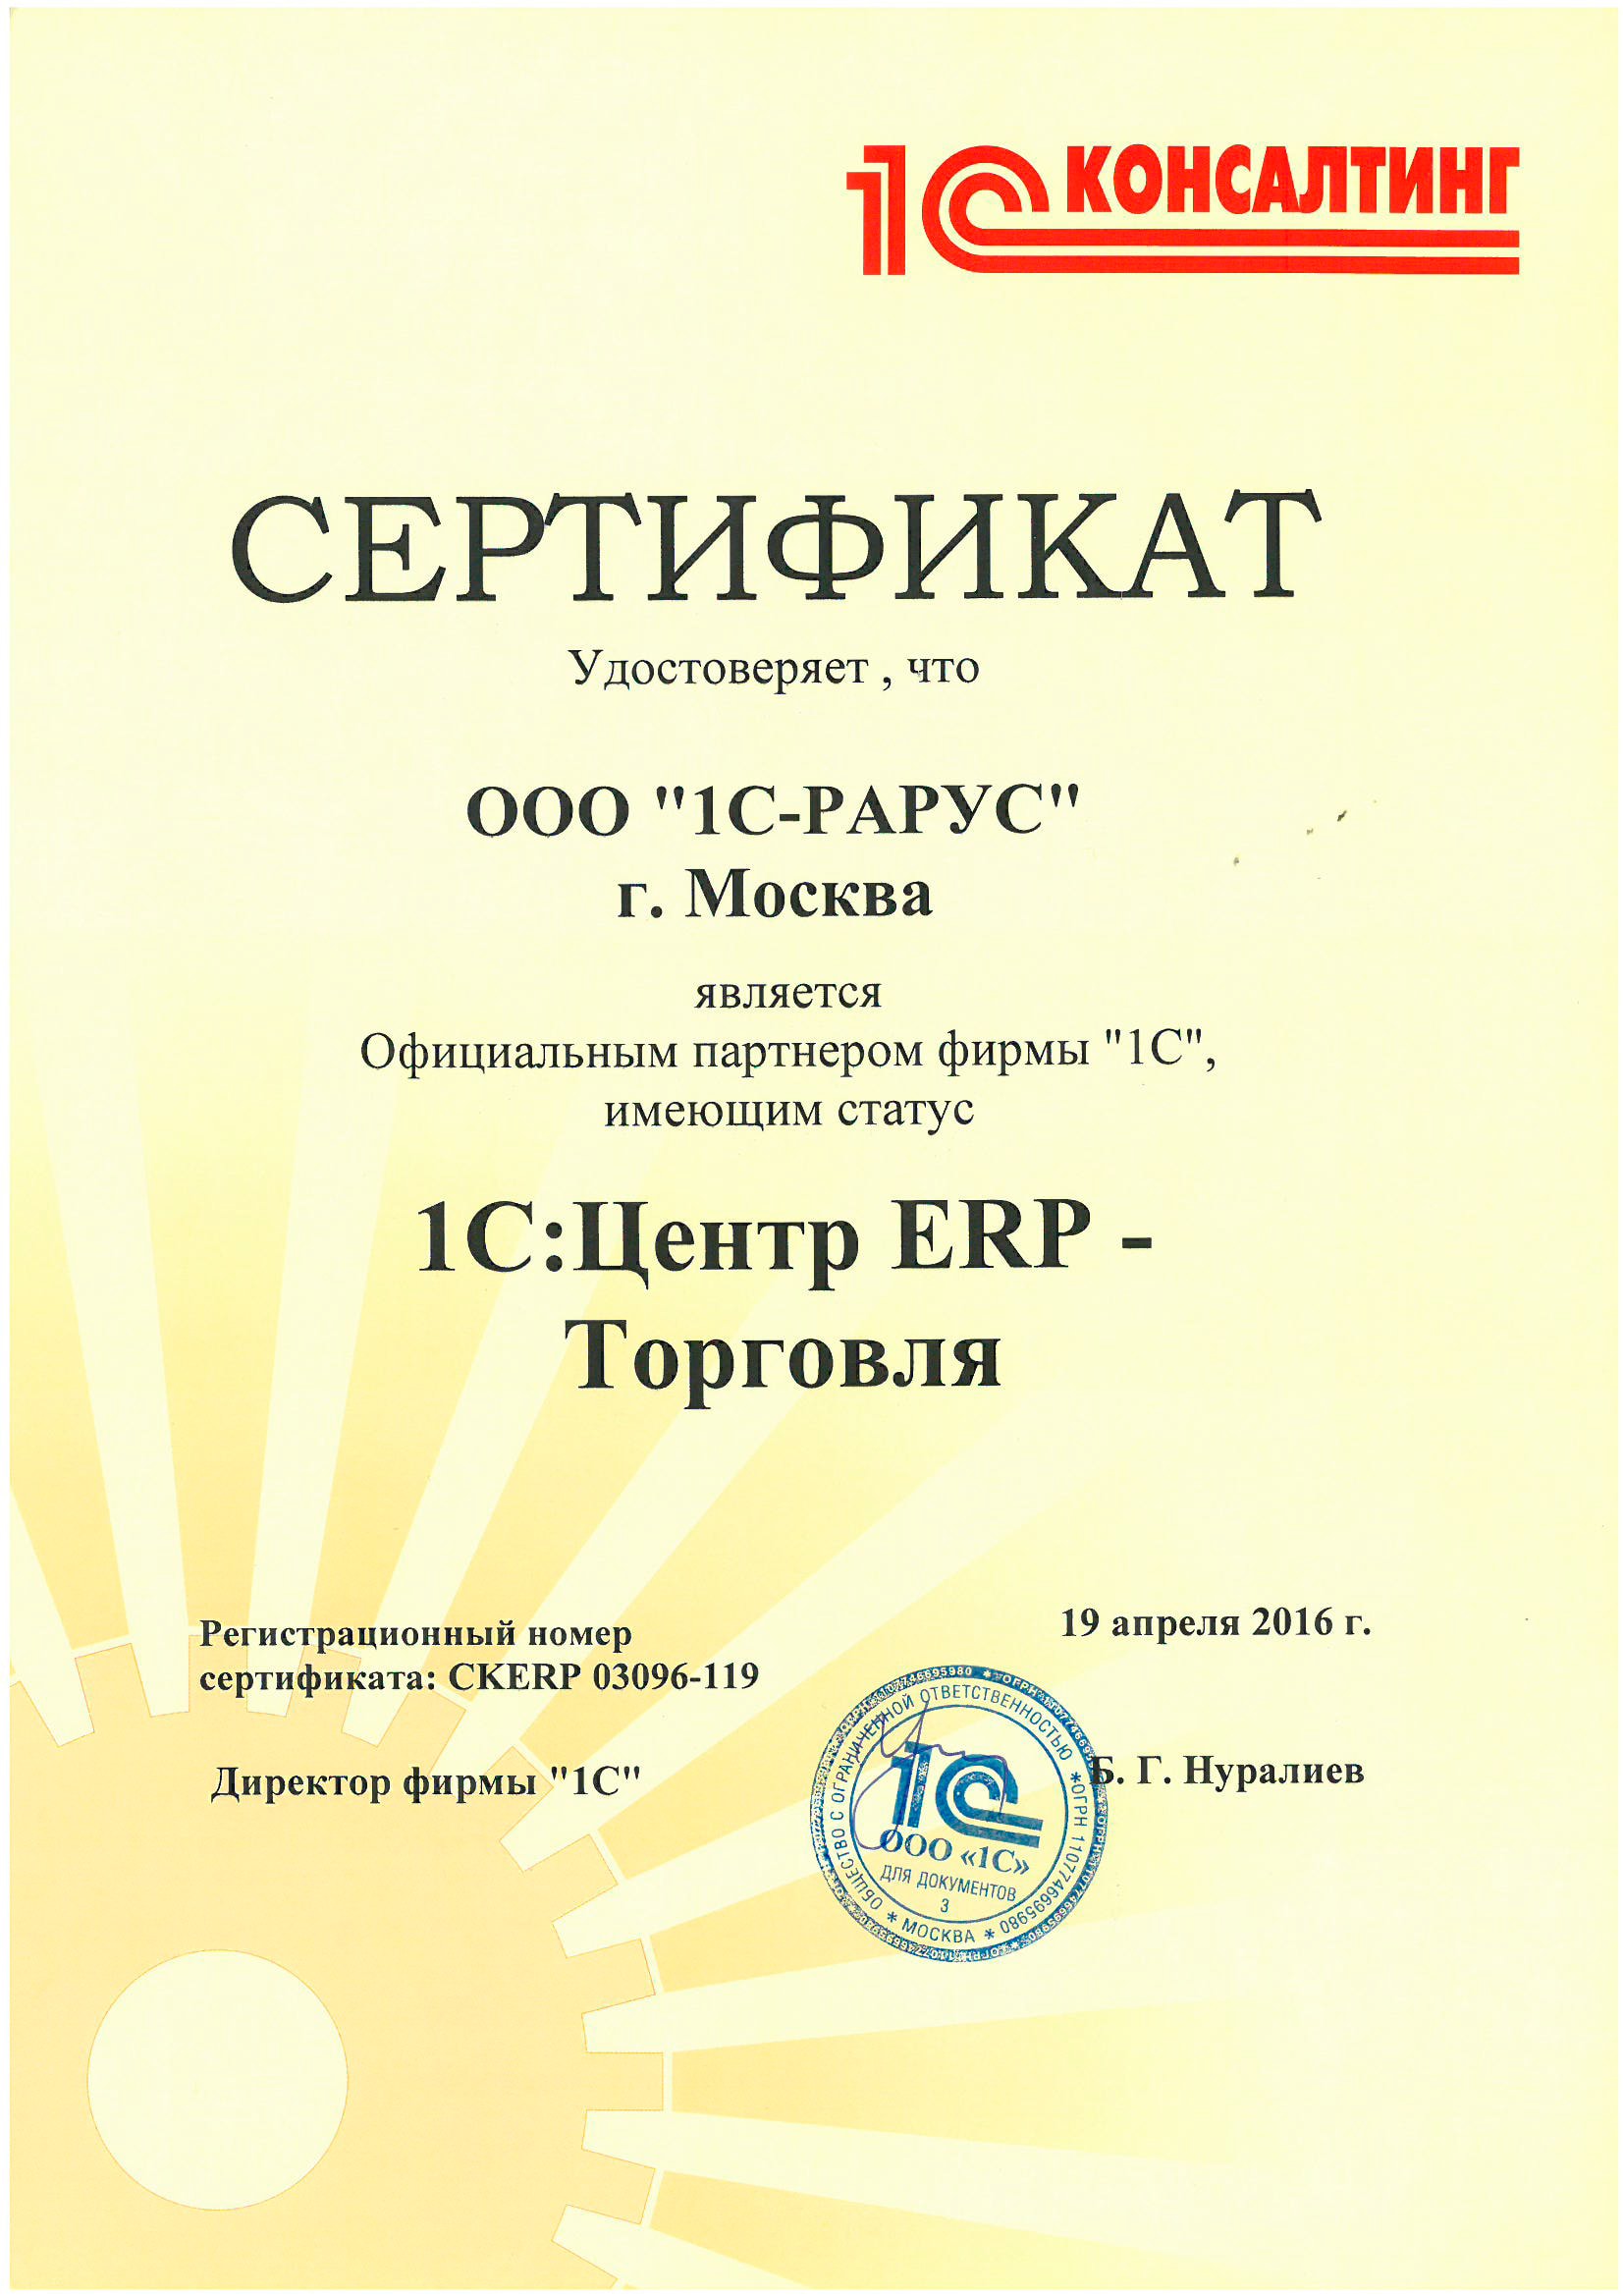 Сертификат «1С» «1С:Центр ERP — Торговля»